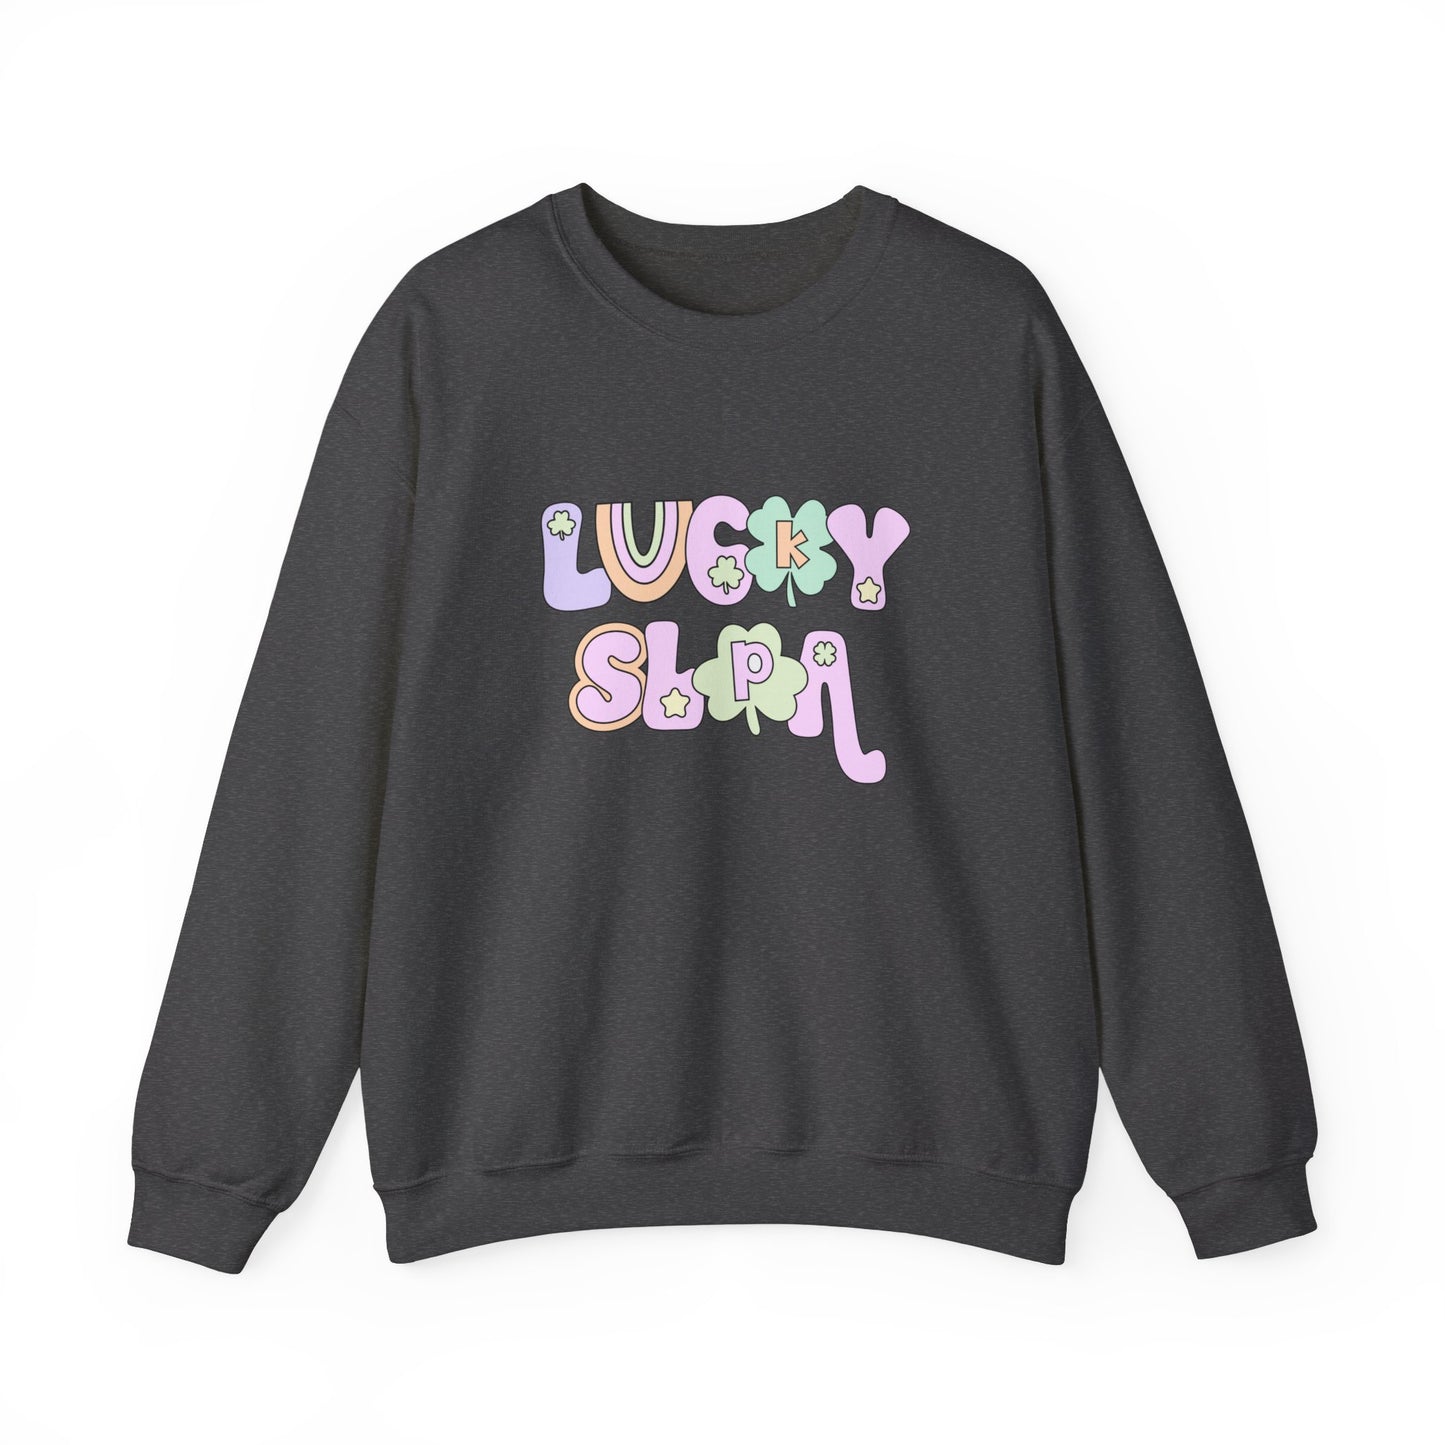 Lucky SLPA Crewneck Sweatshirt